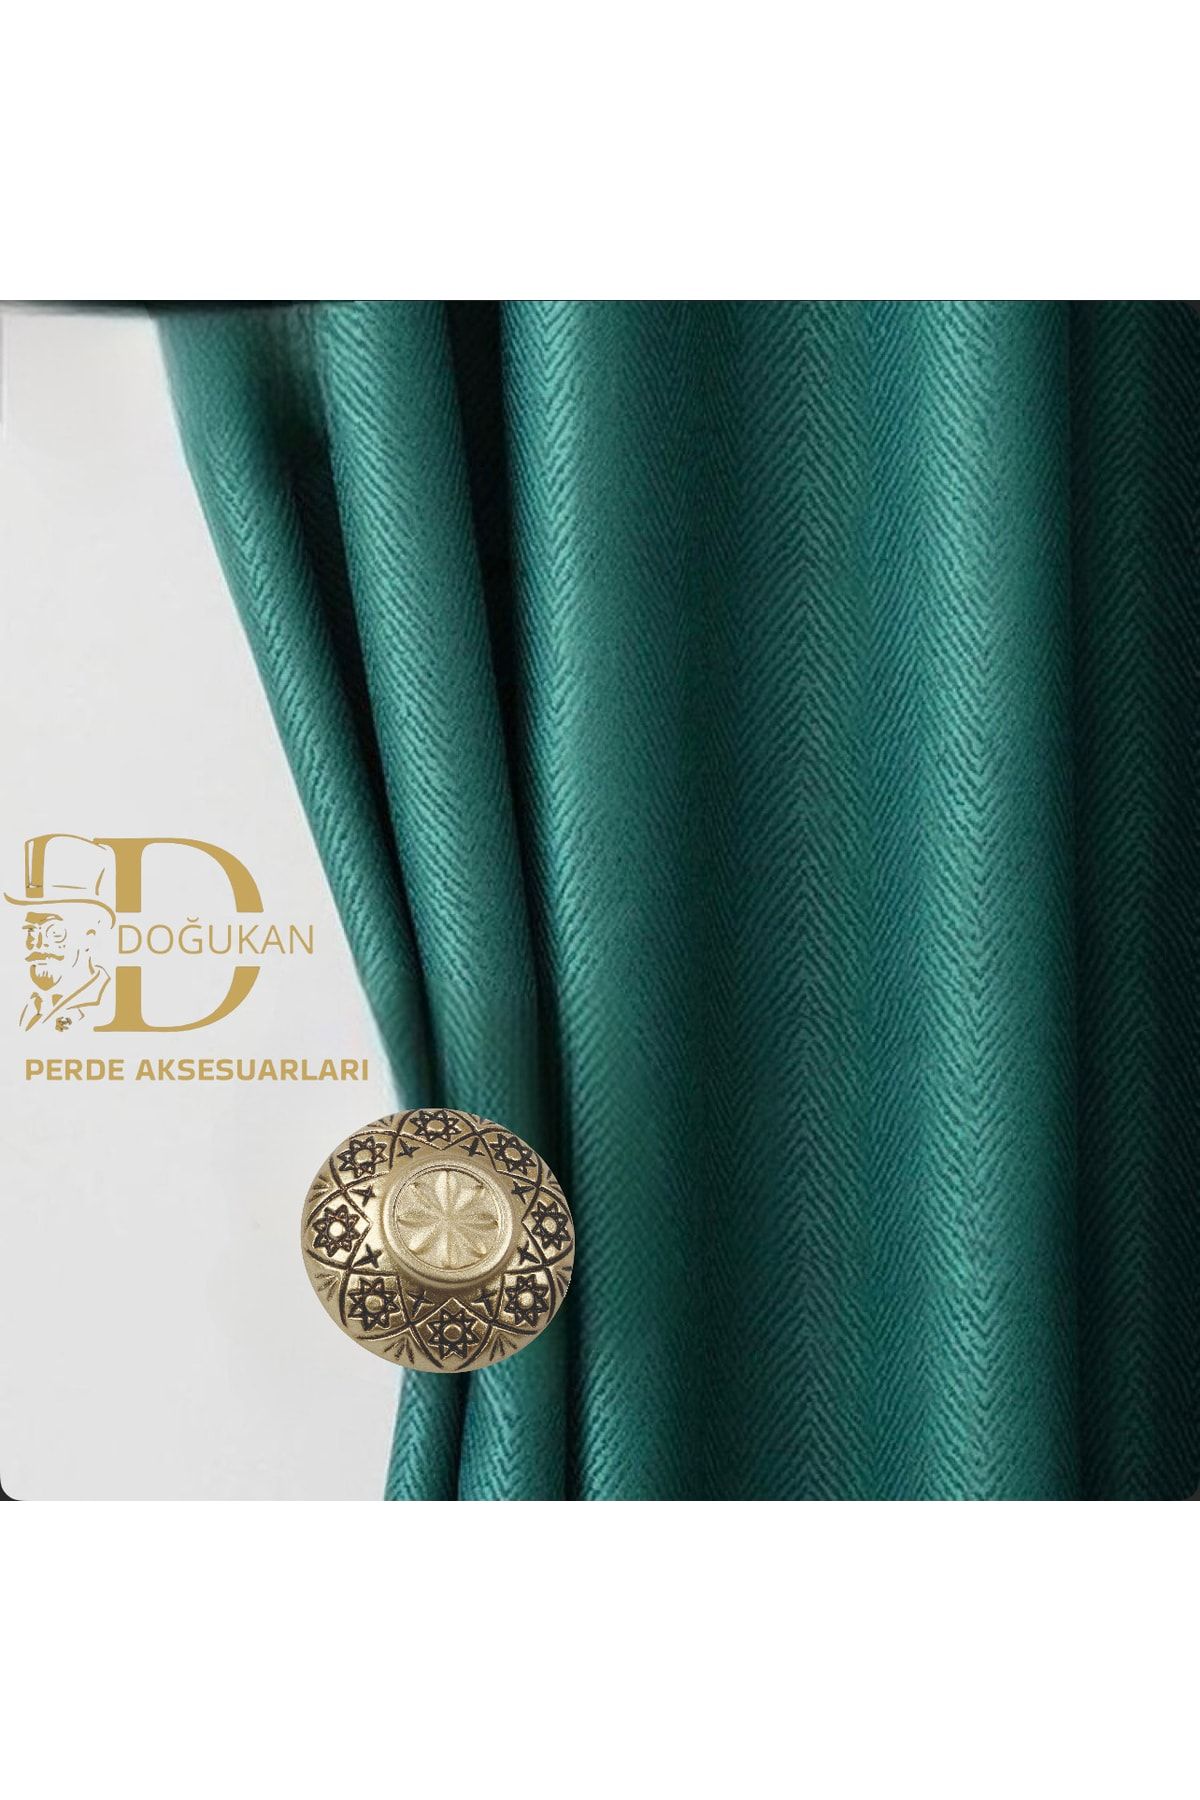 Doğukan perde aksesuarları Pr-20 Renso Altın Varak Özel Tasarım Polyester (1 ADET)